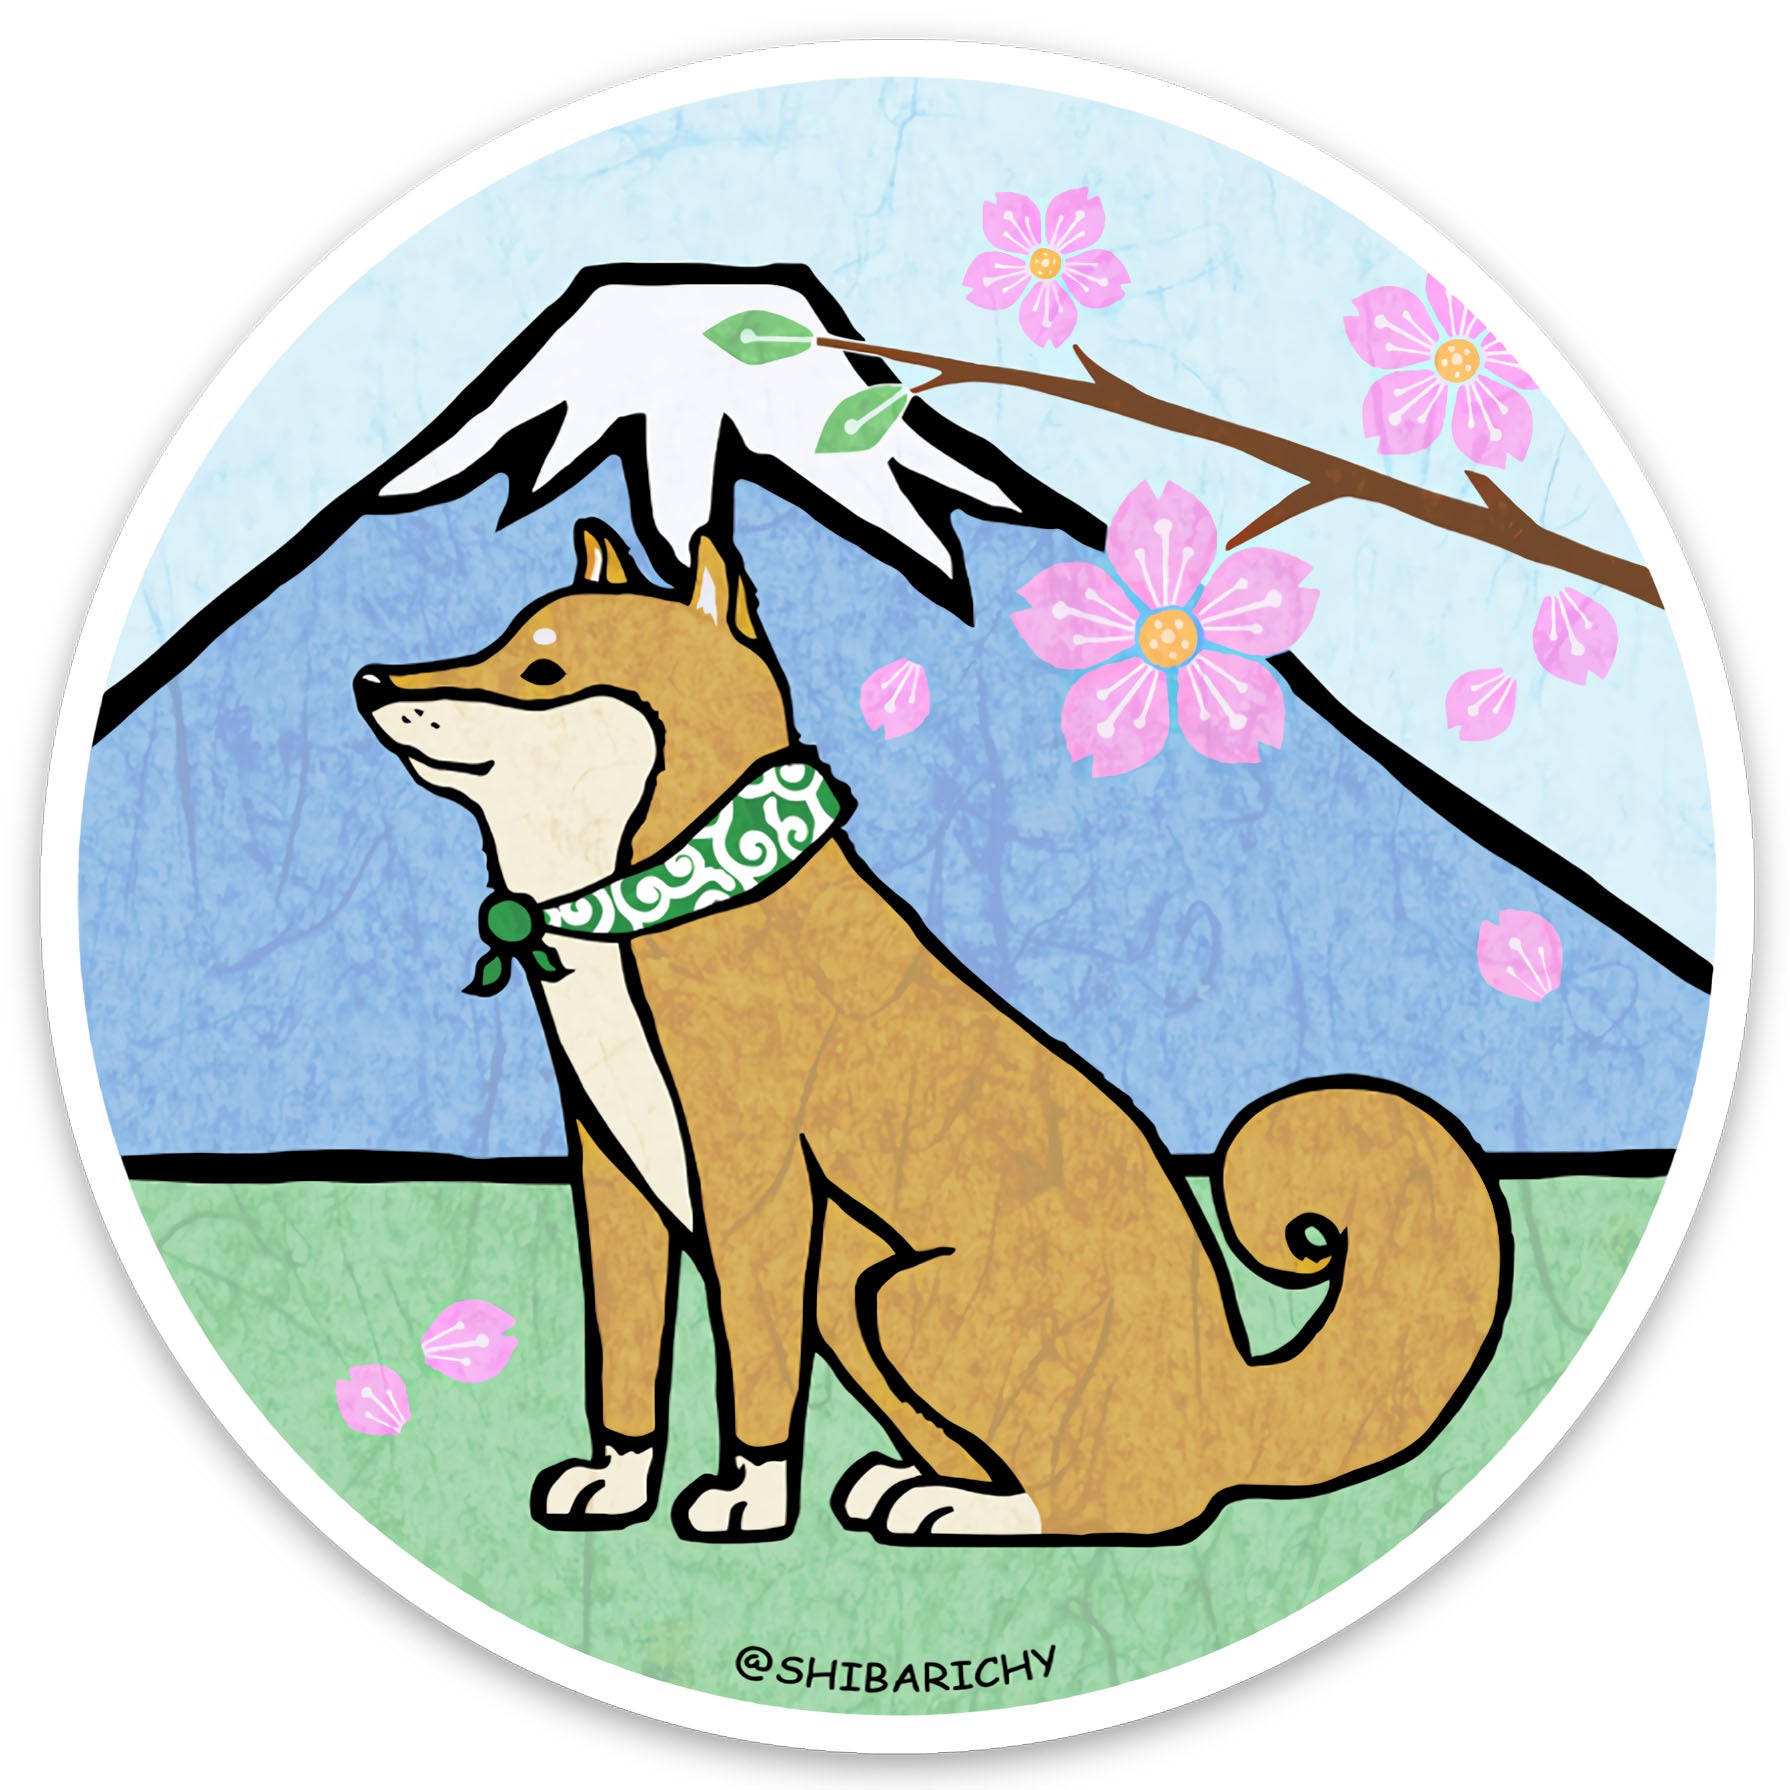 Shiba Inu Sakura Fujisan Sticker | Shiba ken sticker with Cherry Blossoms & Mt. Fuji